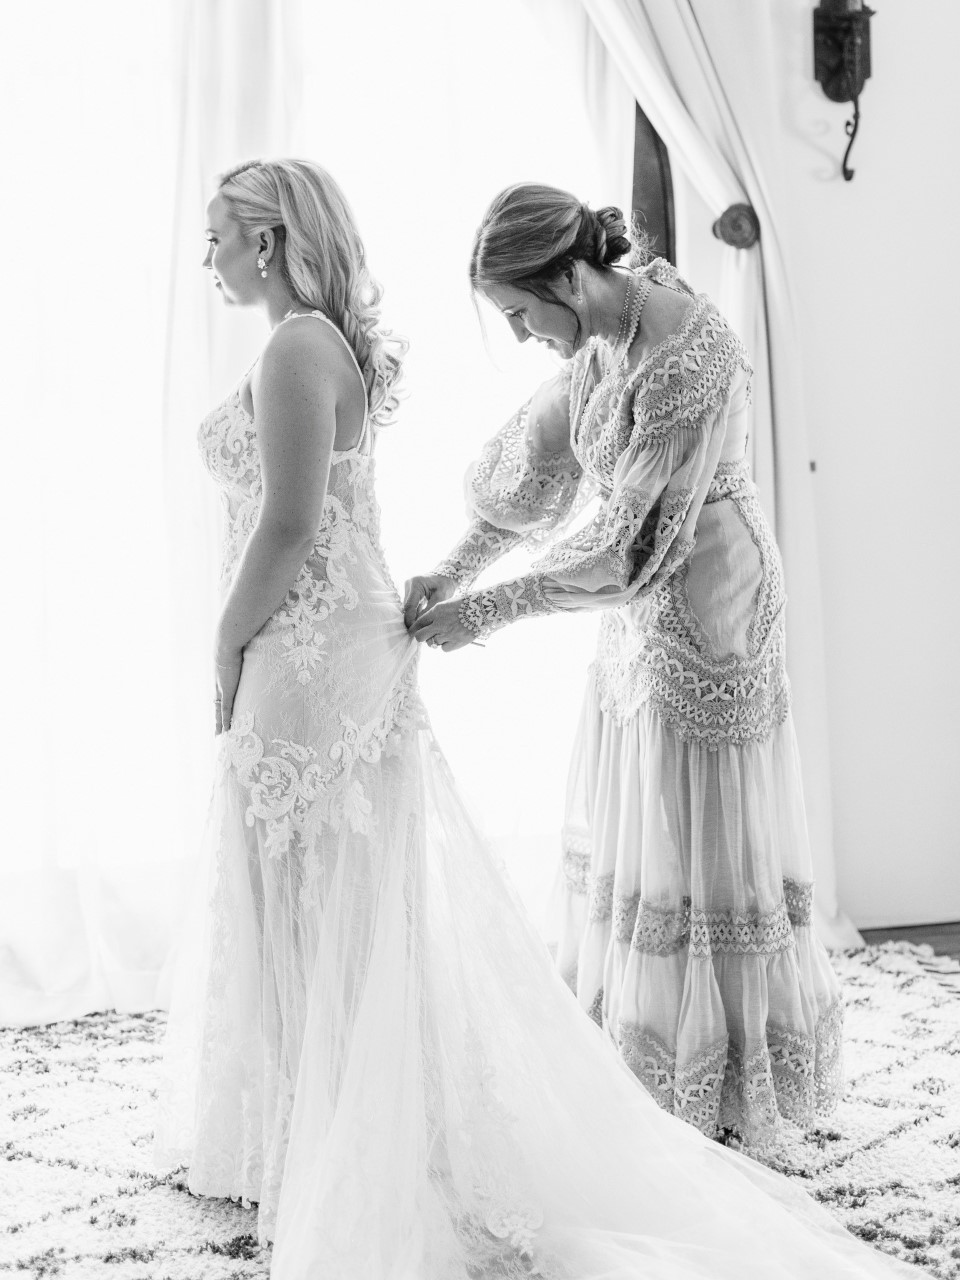 Dr. Behr tying her daughter's wedding dress